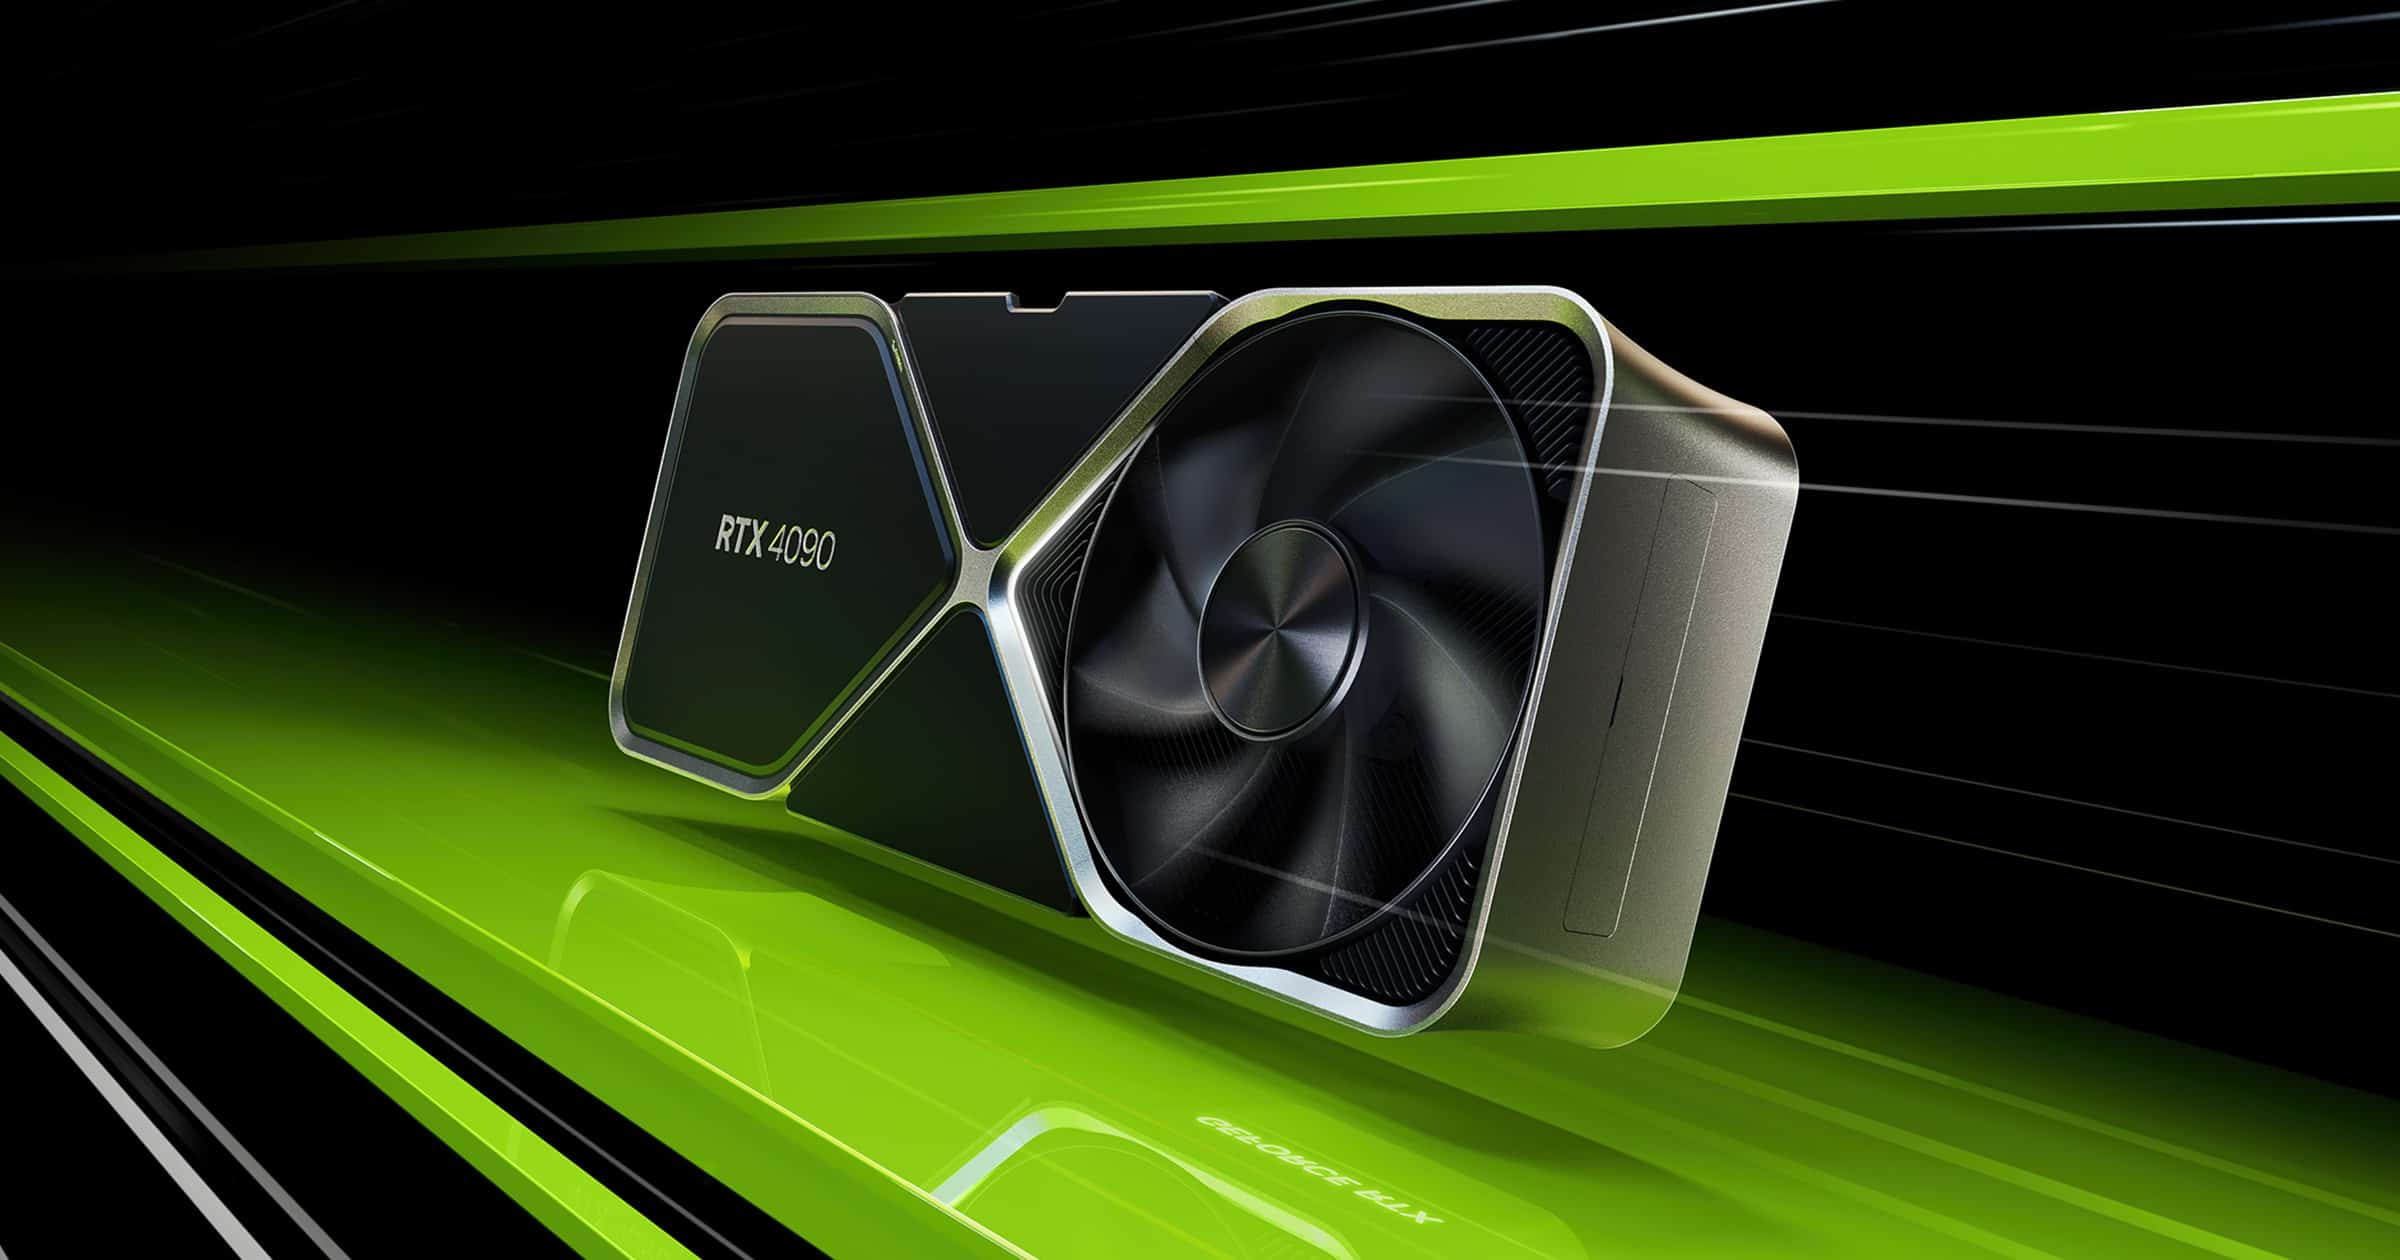 Nvidia RTX 4090 GPU on black and green background